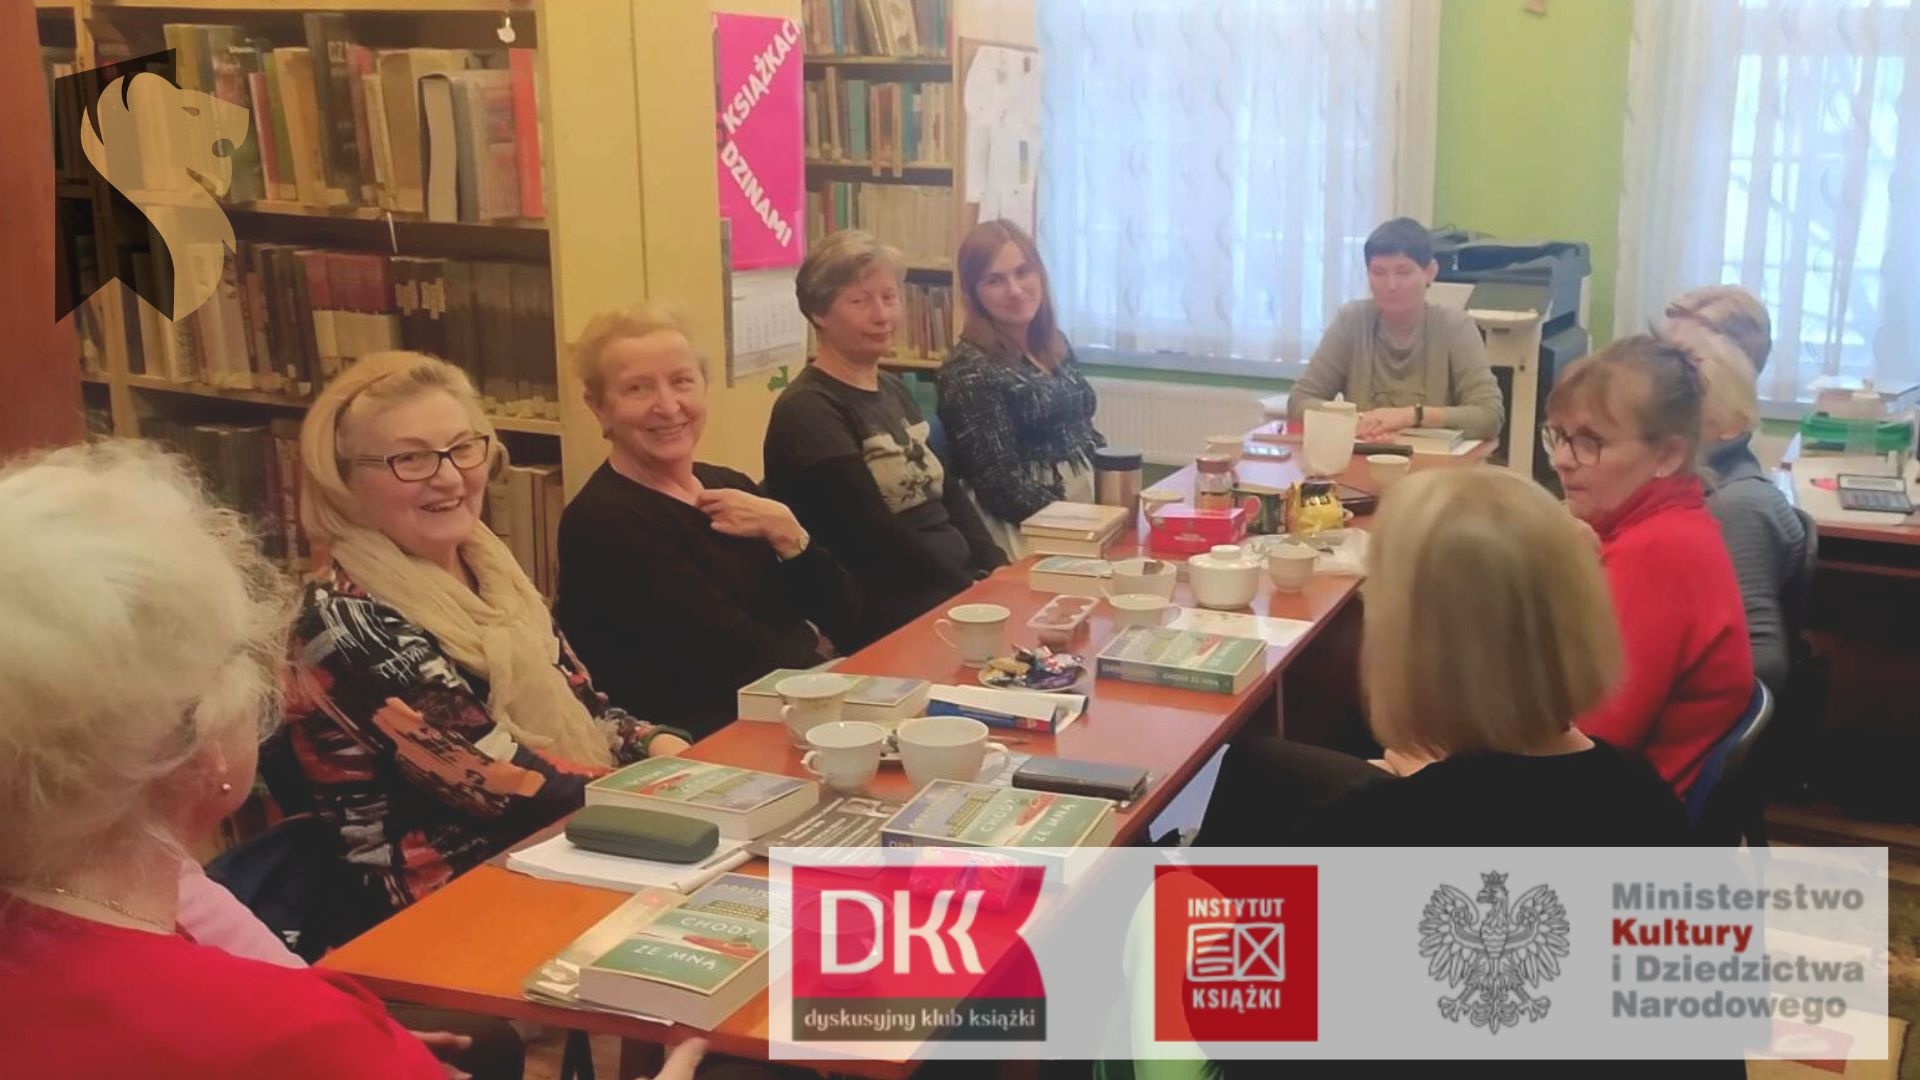 Dziesięć kobiet z Dyskusyjnego Klubu Książk siedzi przy stole, na którym leżą książki oraz stoją filiżanki.